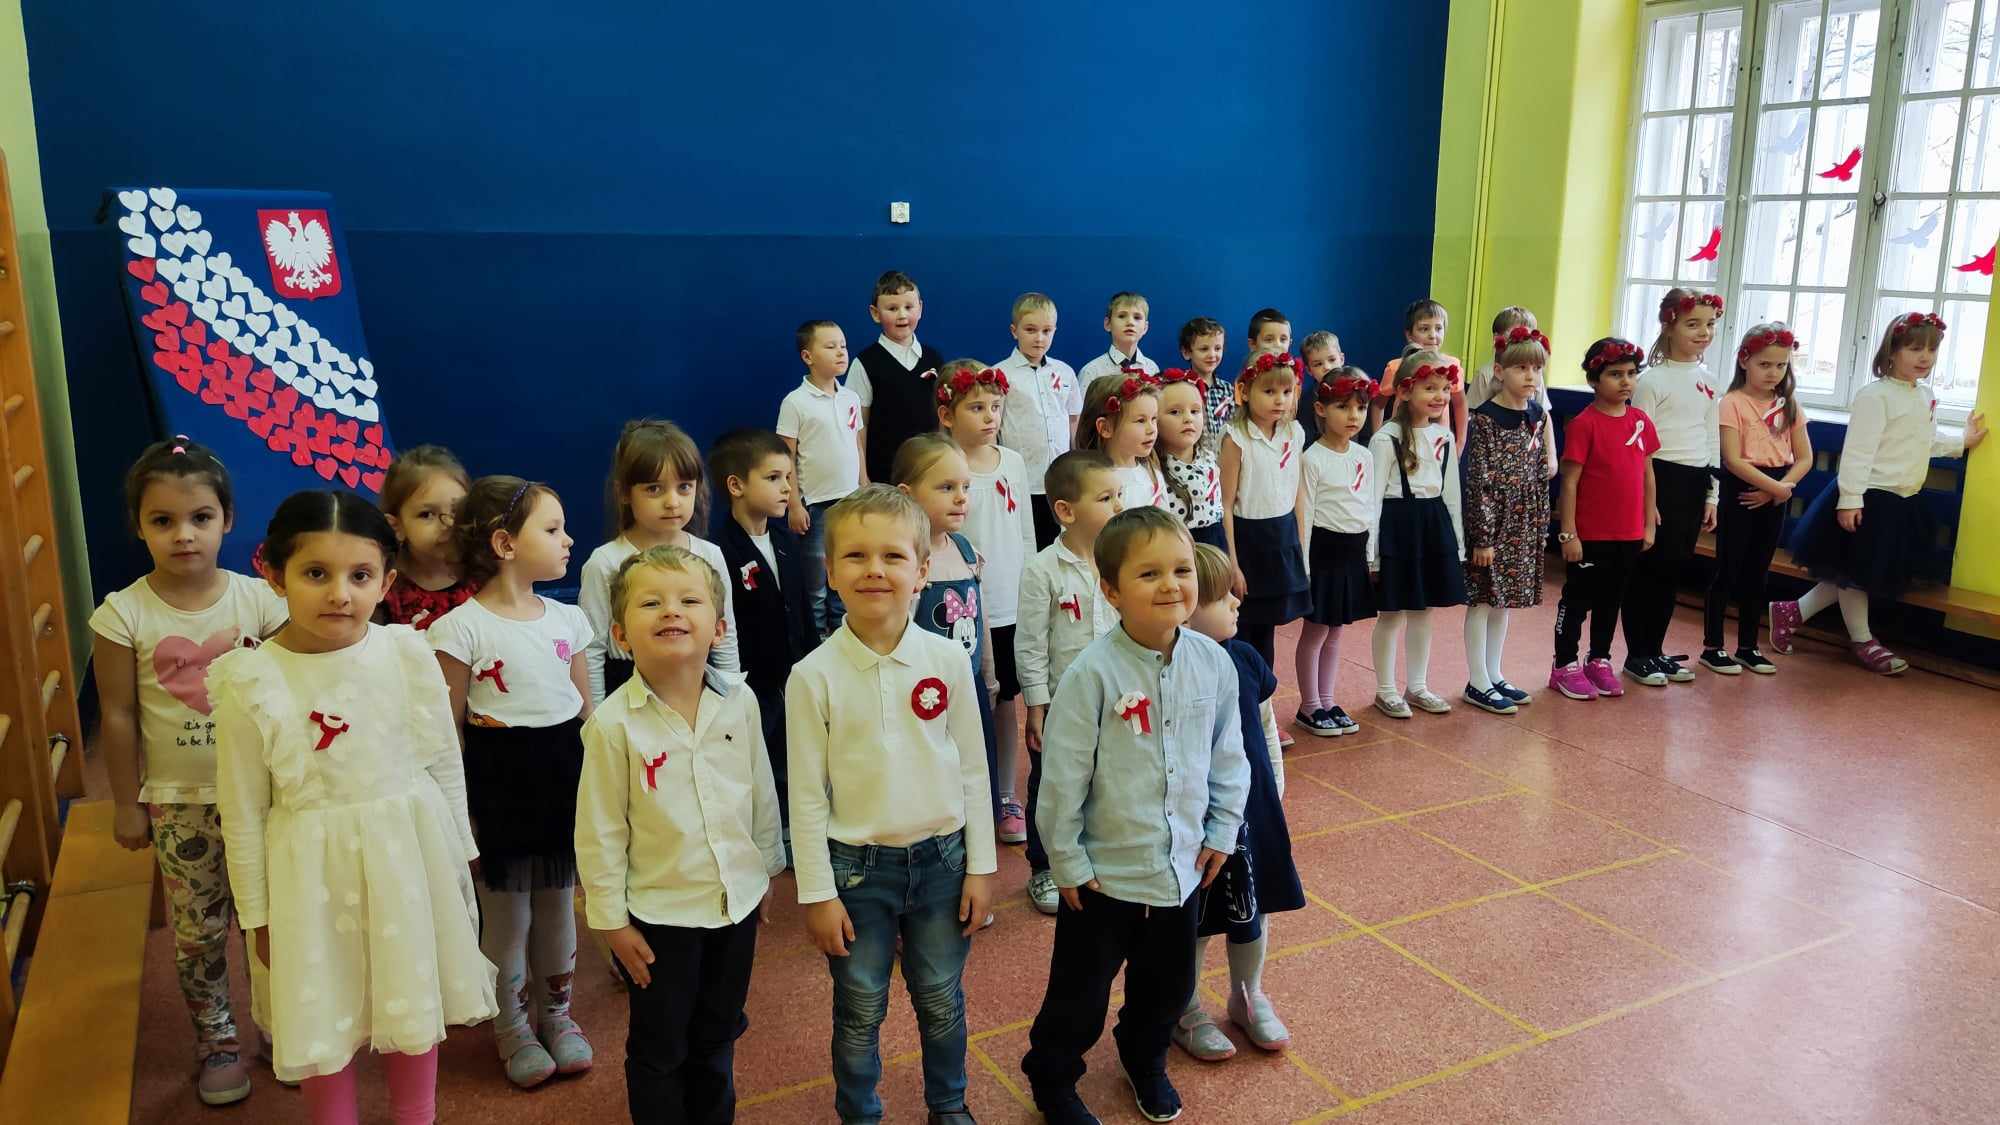 Dzieci ubrane na galowo śpiewają hymn państwowy